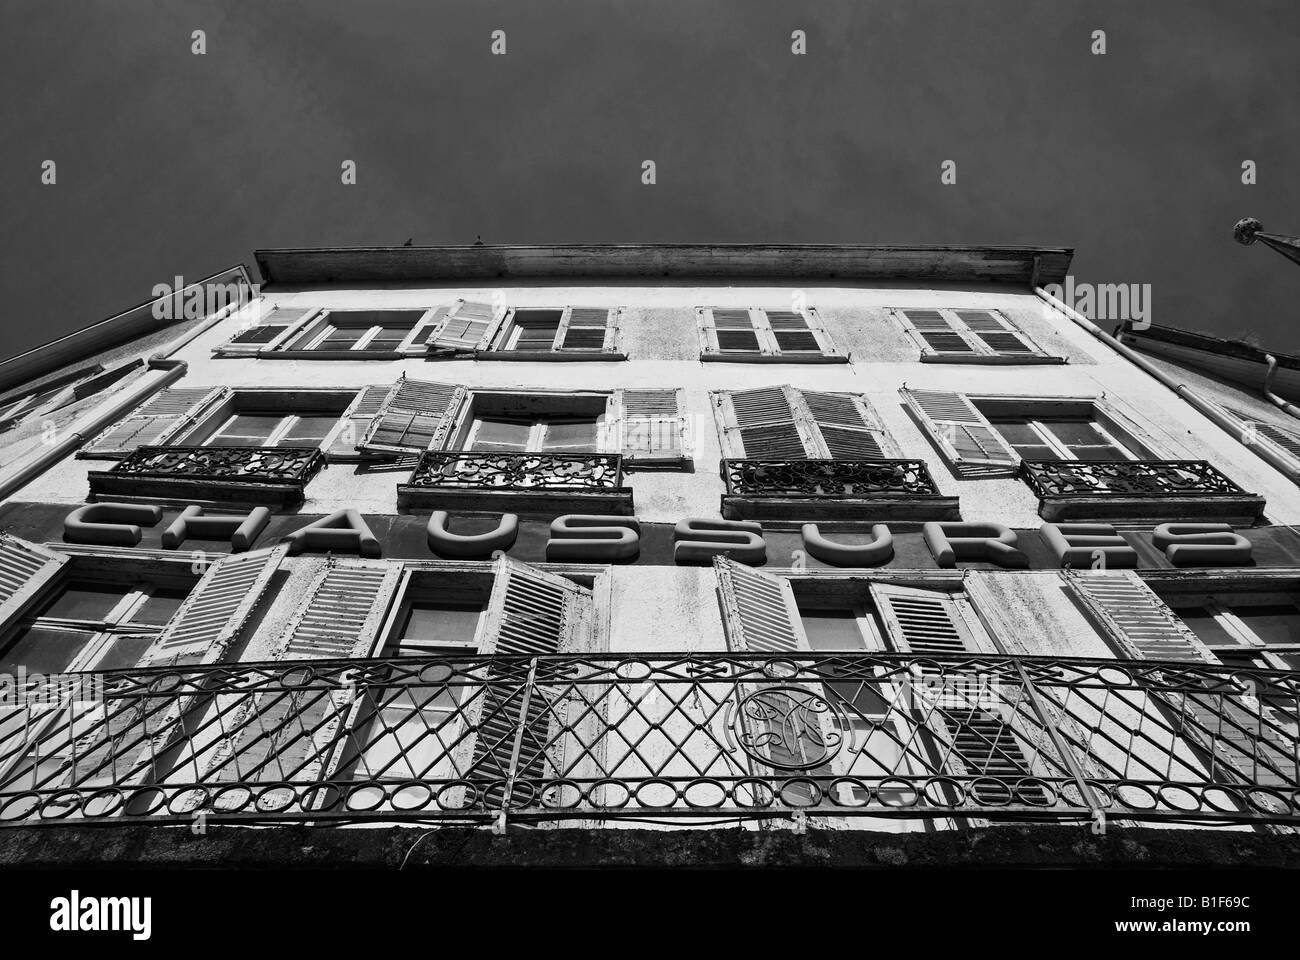 Stock Foto von einem alten Fensterläden Fenstermodus Schuh-Shop das Foto aufgenommen in der Stadt Limoges in Frankreich Stockfoto